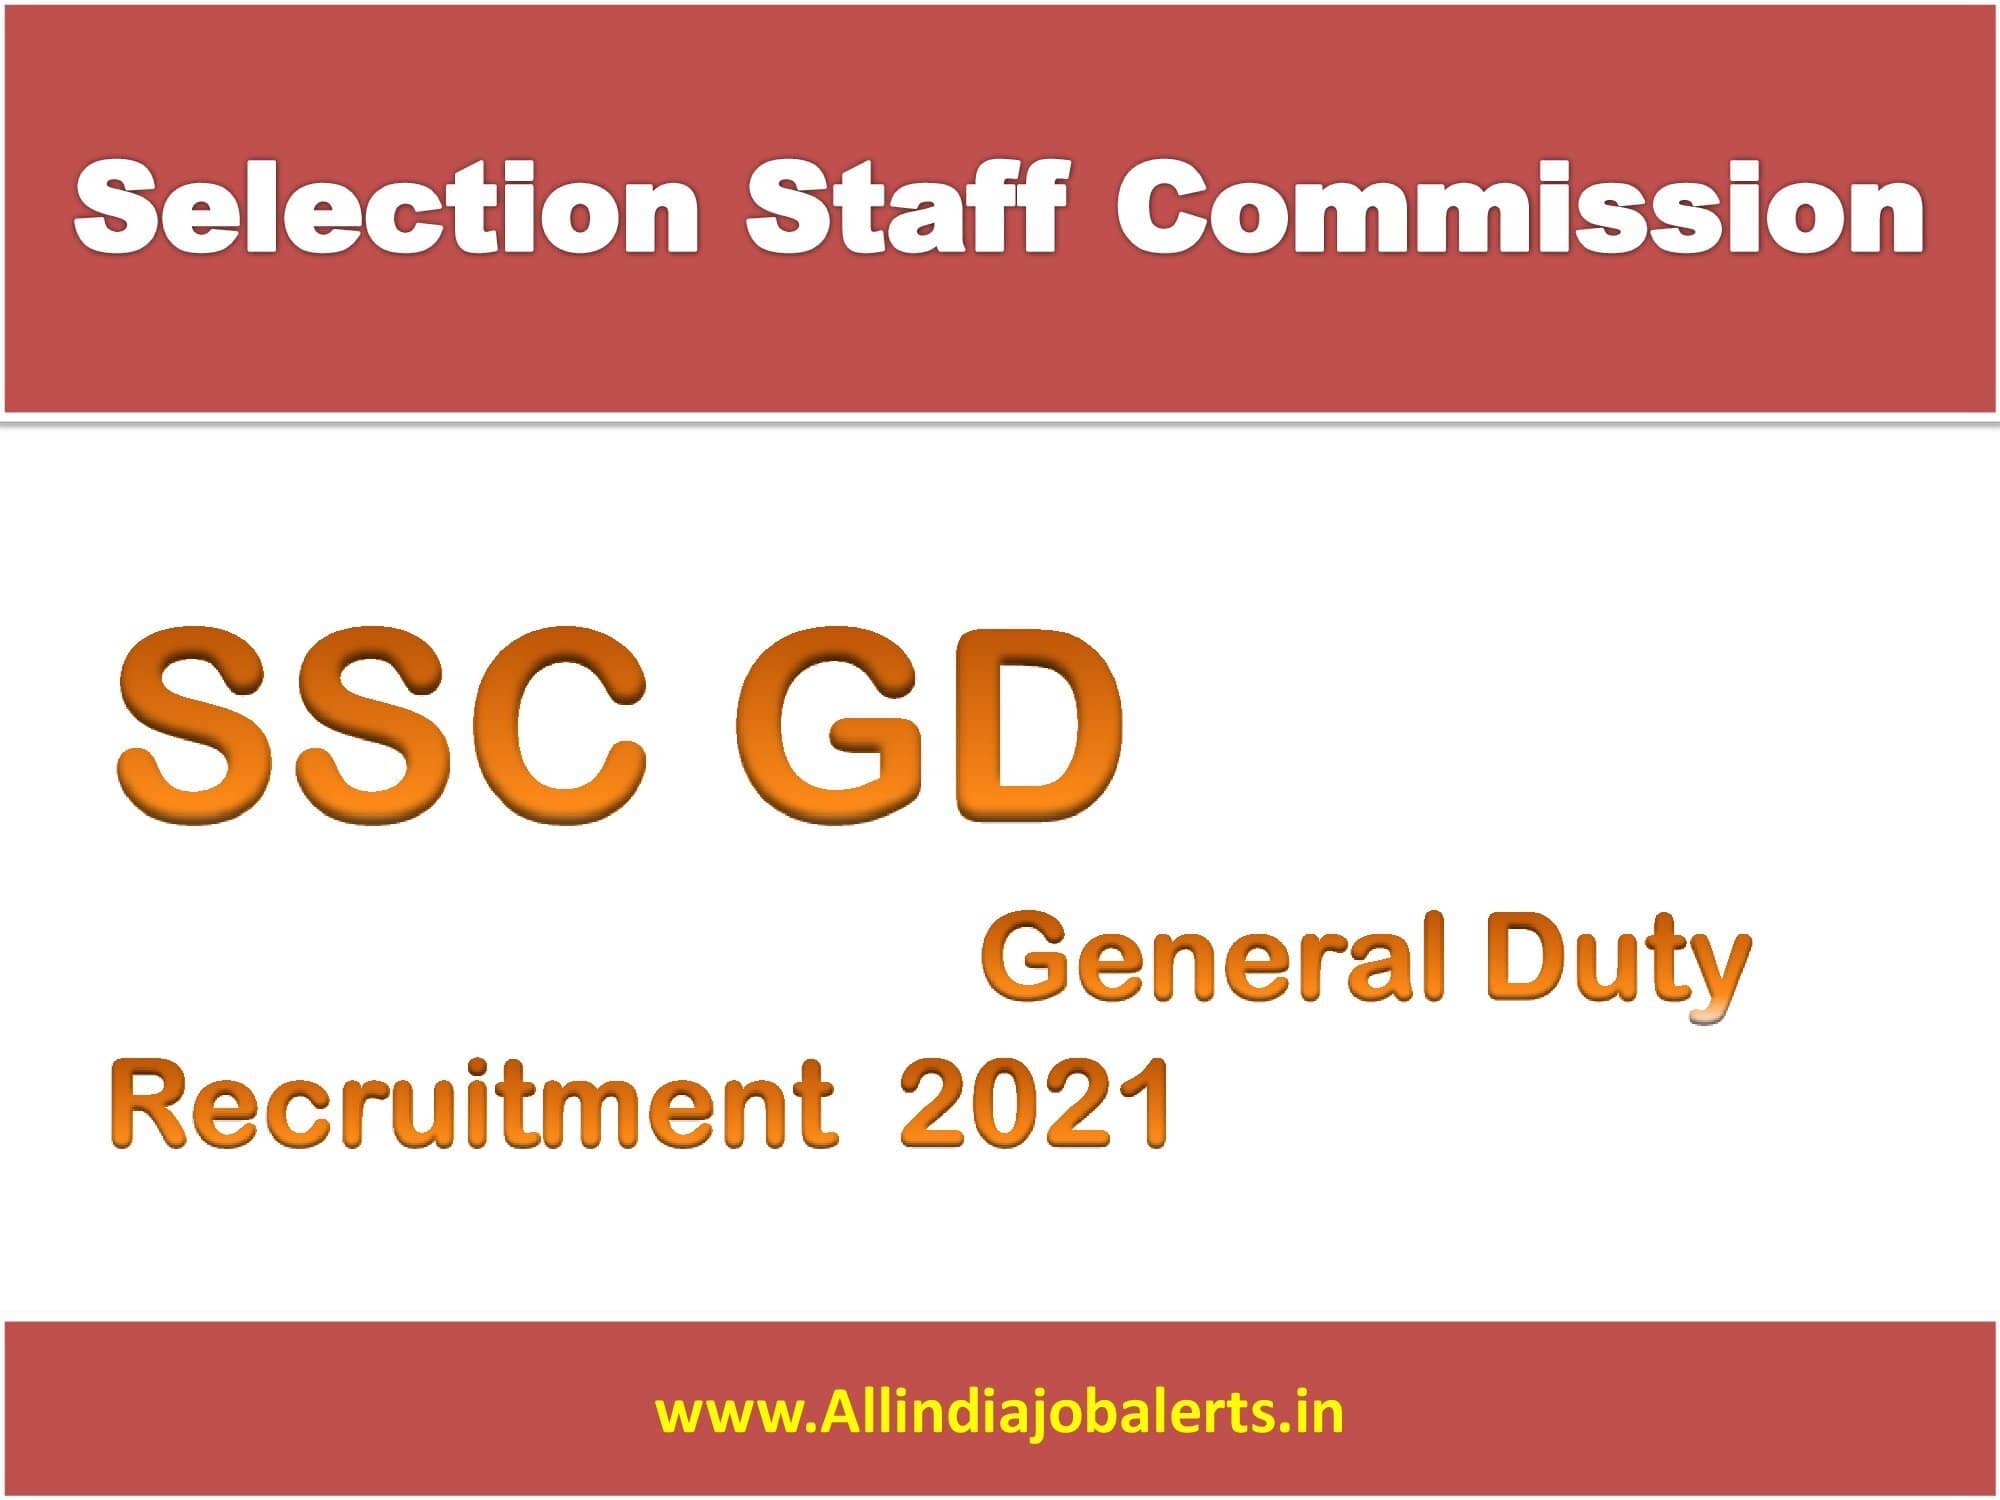 SSC GD Constable Recruitment 2021